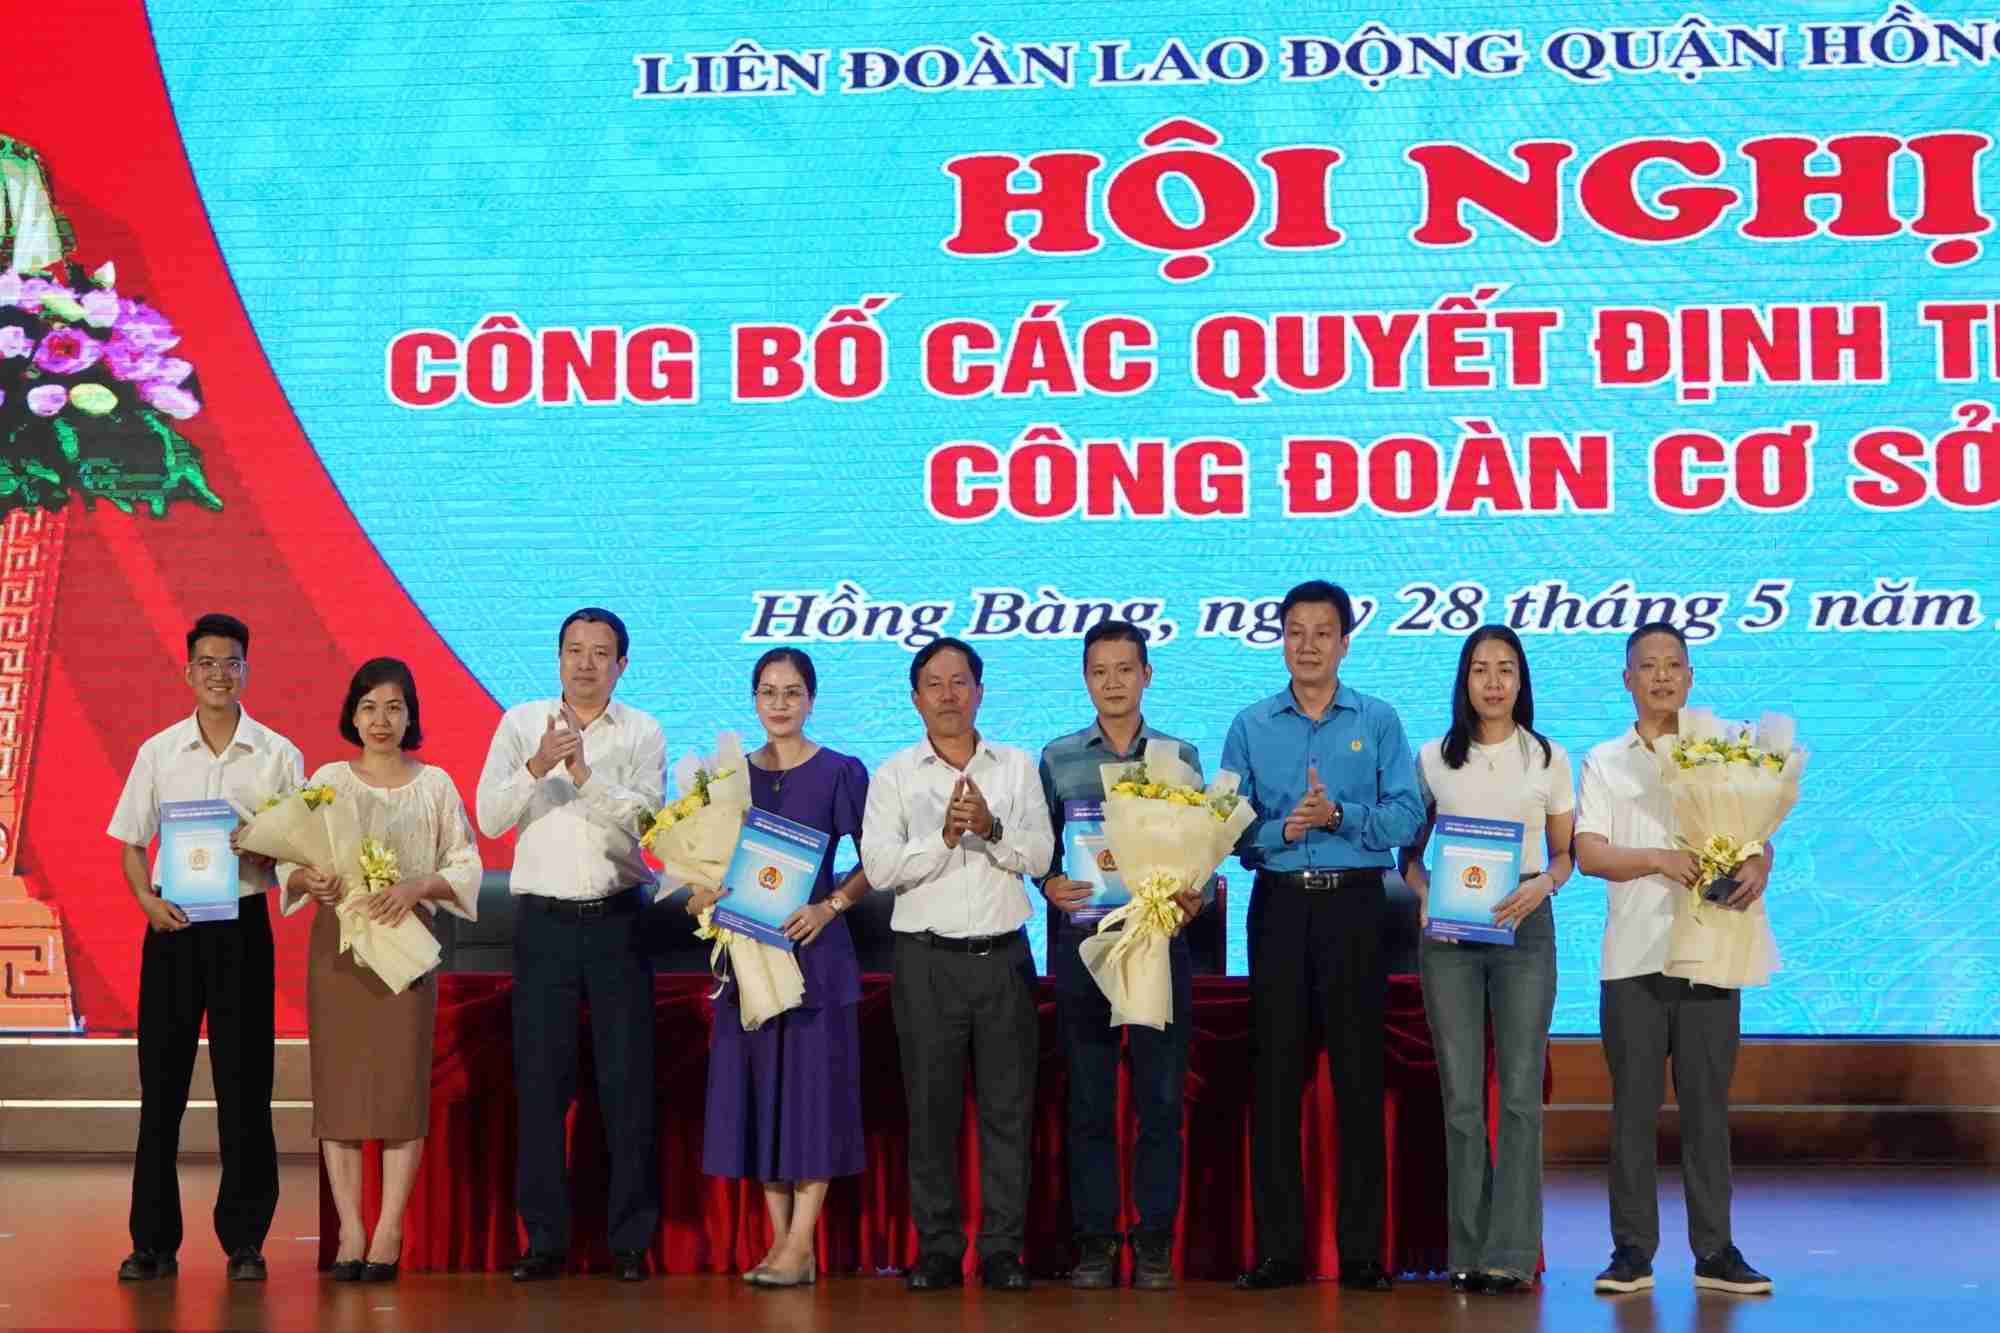 LĐLĐ quận Hồng Bàng trao quyết định thành lập 4 công đoàn cơ sở tại hội nghị. Ảnh: Mai Dung